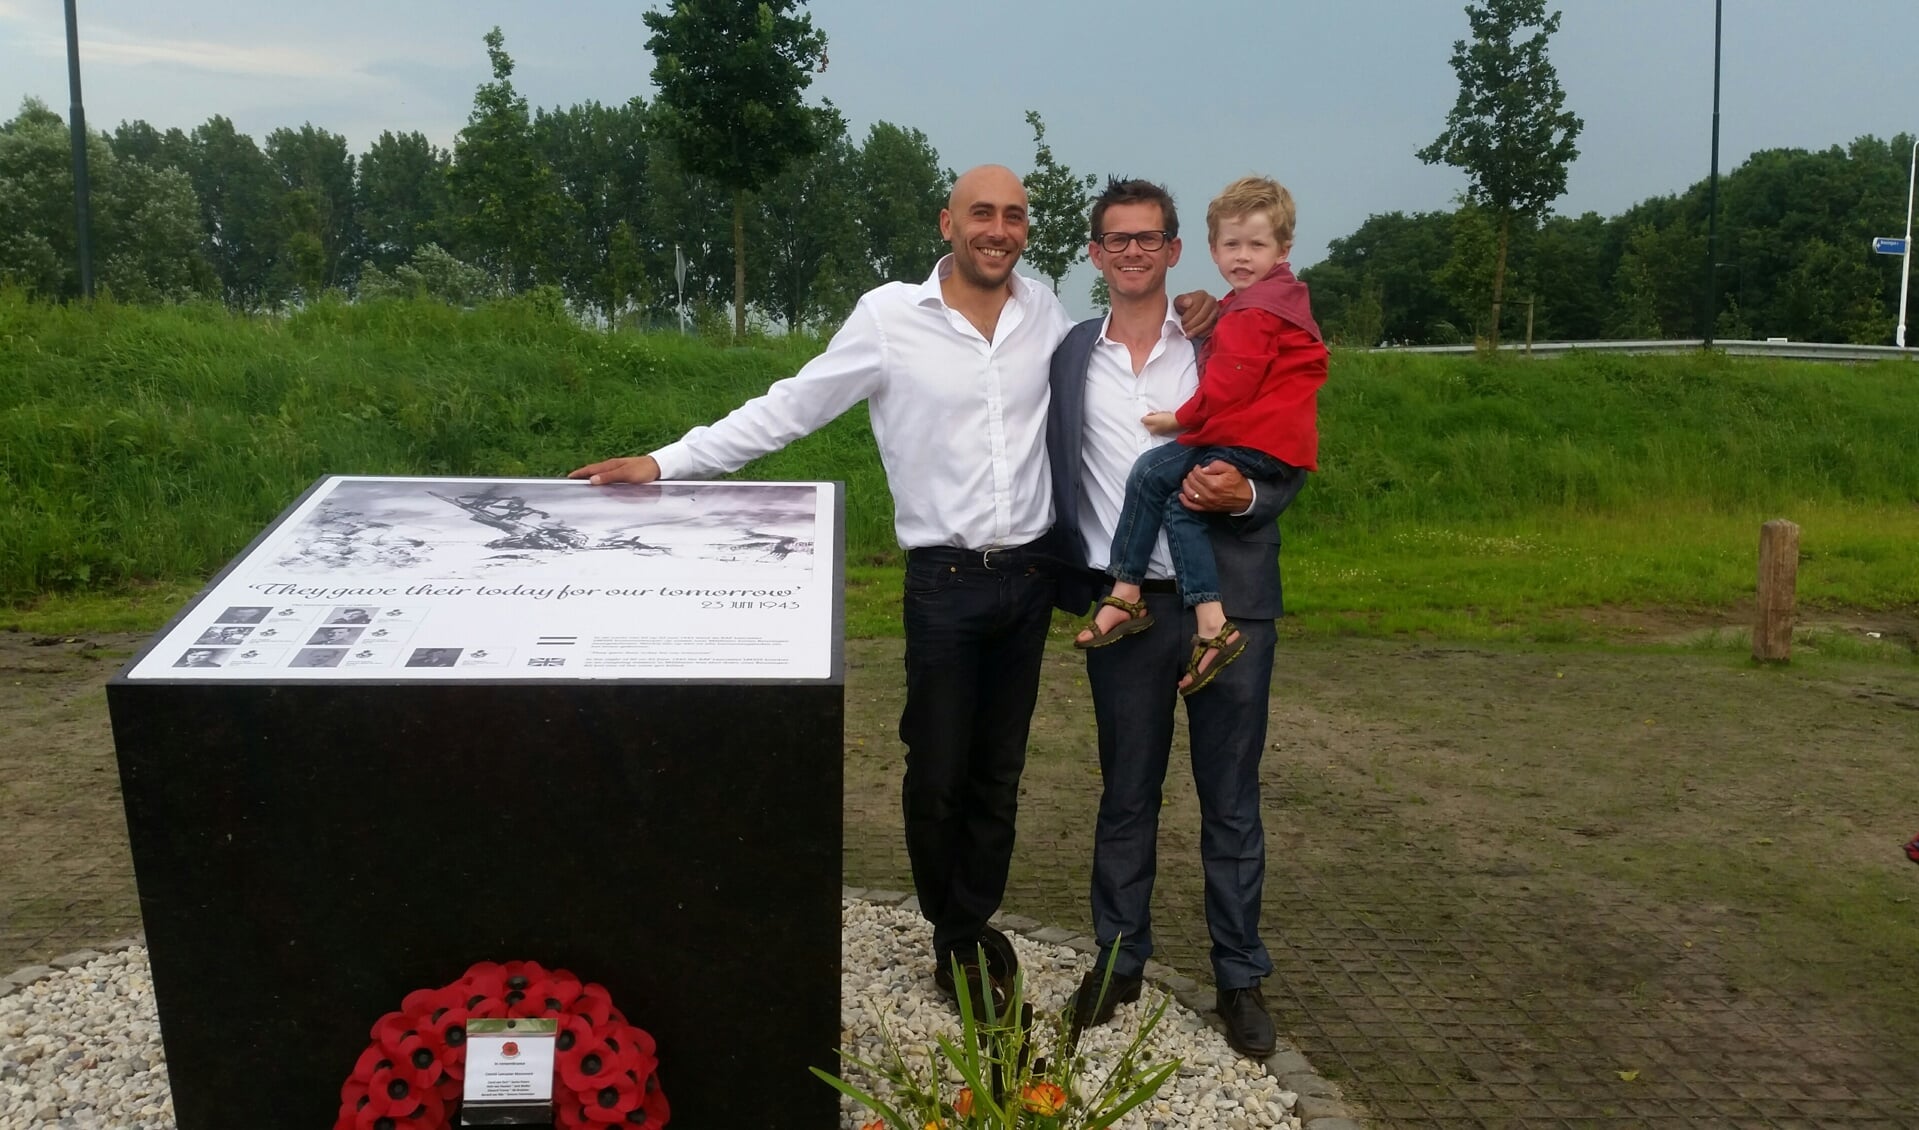 Kunstenaar Hein van Houten (midden) met Tim Barlow (links) en op zijn arm zijn zoon. 